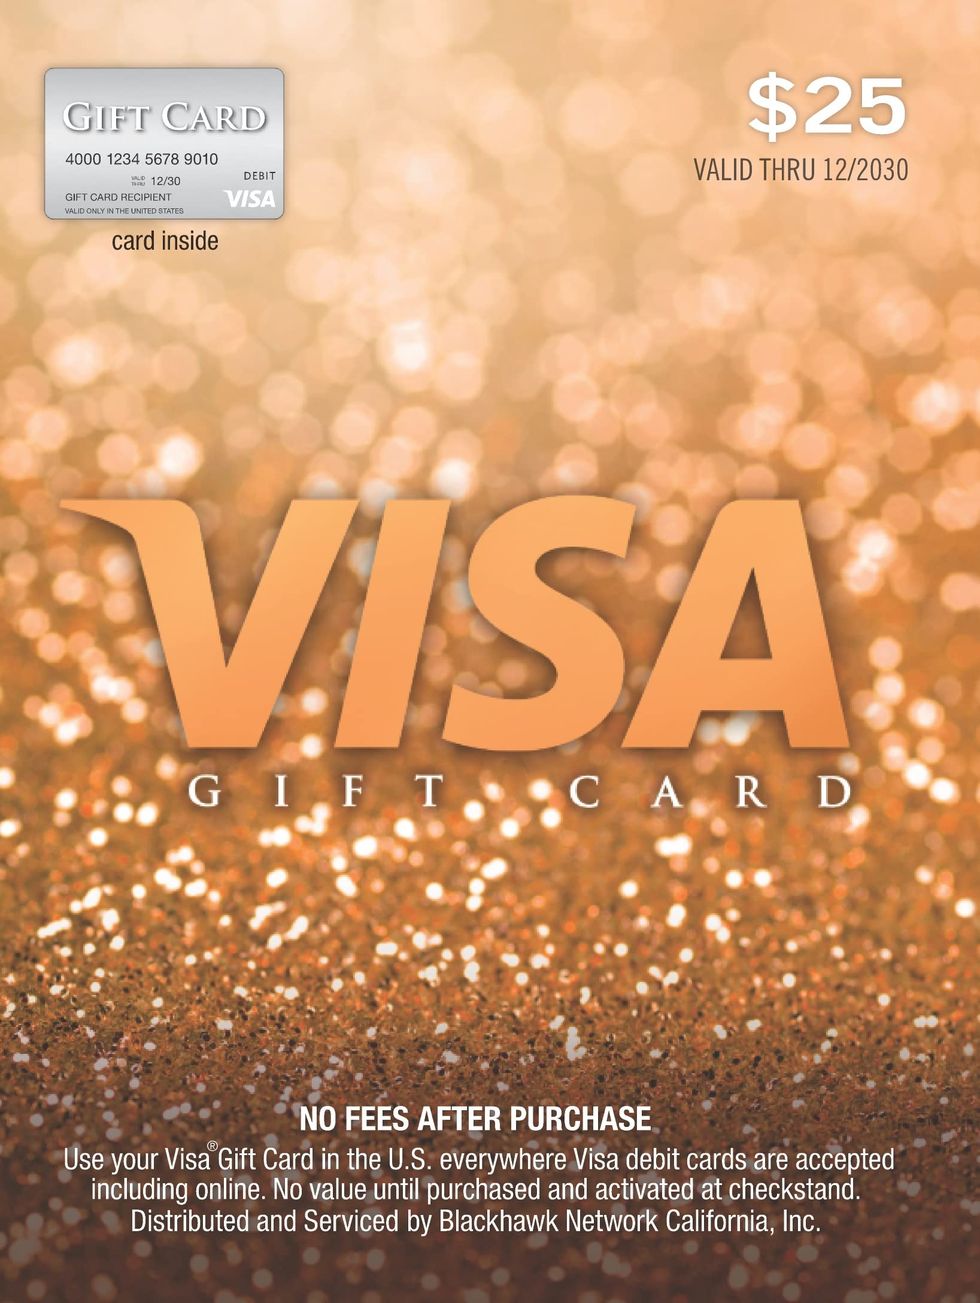 Check Visa Gift Card Balance